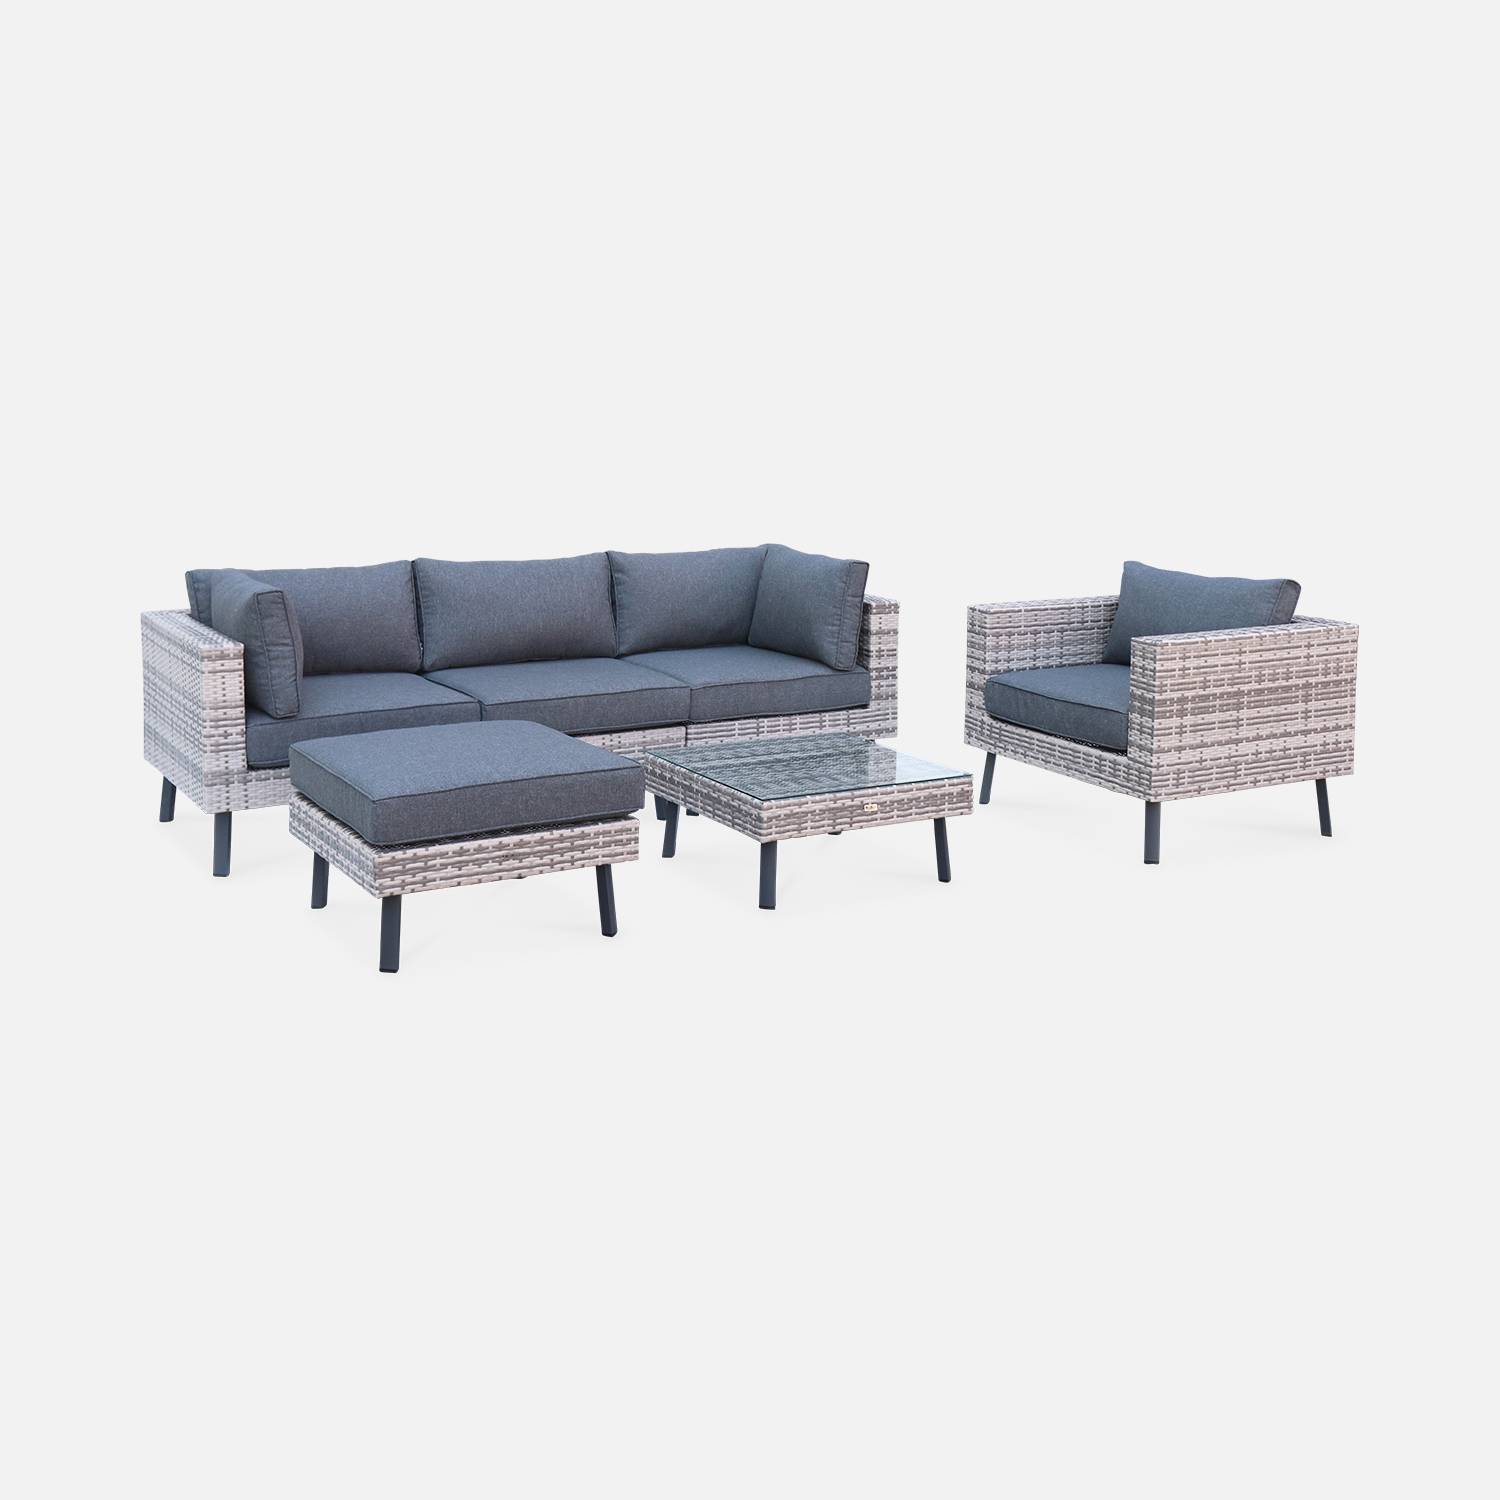 Conjunto de muebles de jardín de 5 plazas en resina tejida plana - Alba - tonos de gris y cojines gris oscuro | sweeek